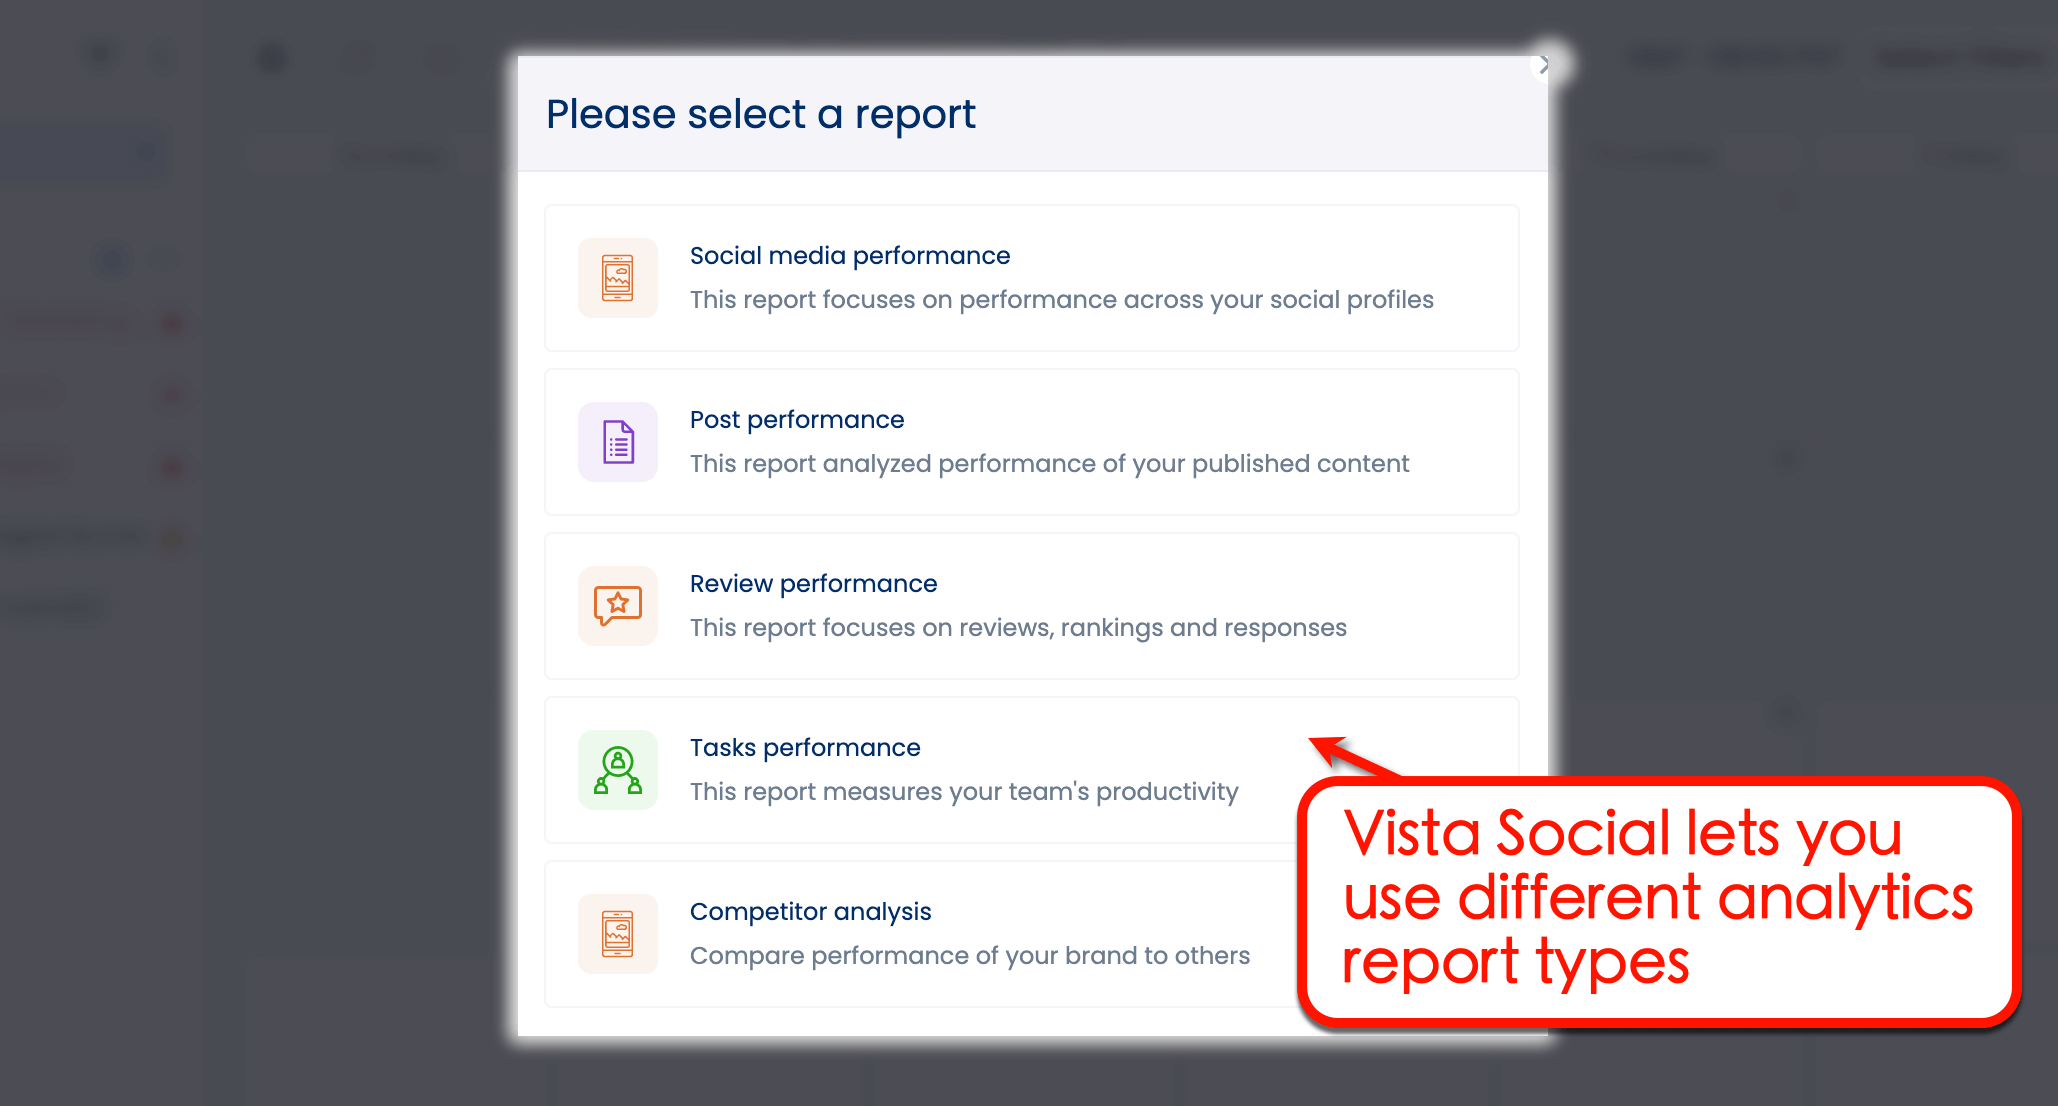 Vista Social's analytics report